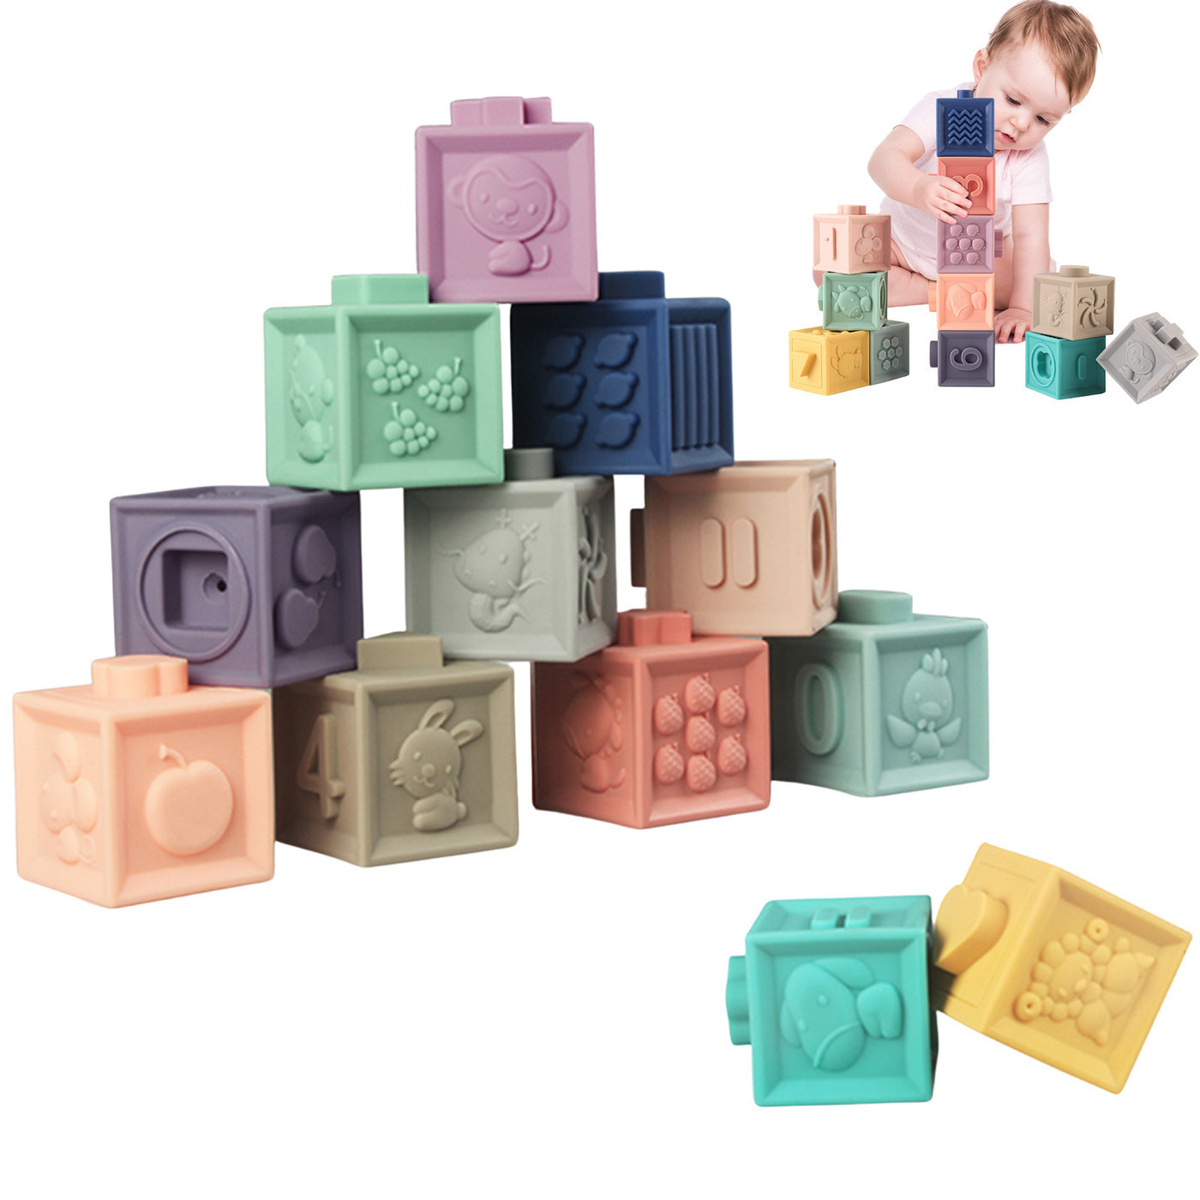 Развивающие мягкие кубики IQ + (12 шт) пастельные цвета/ Многоразовая ЭКО упаковка / Игрушки развивающие #1